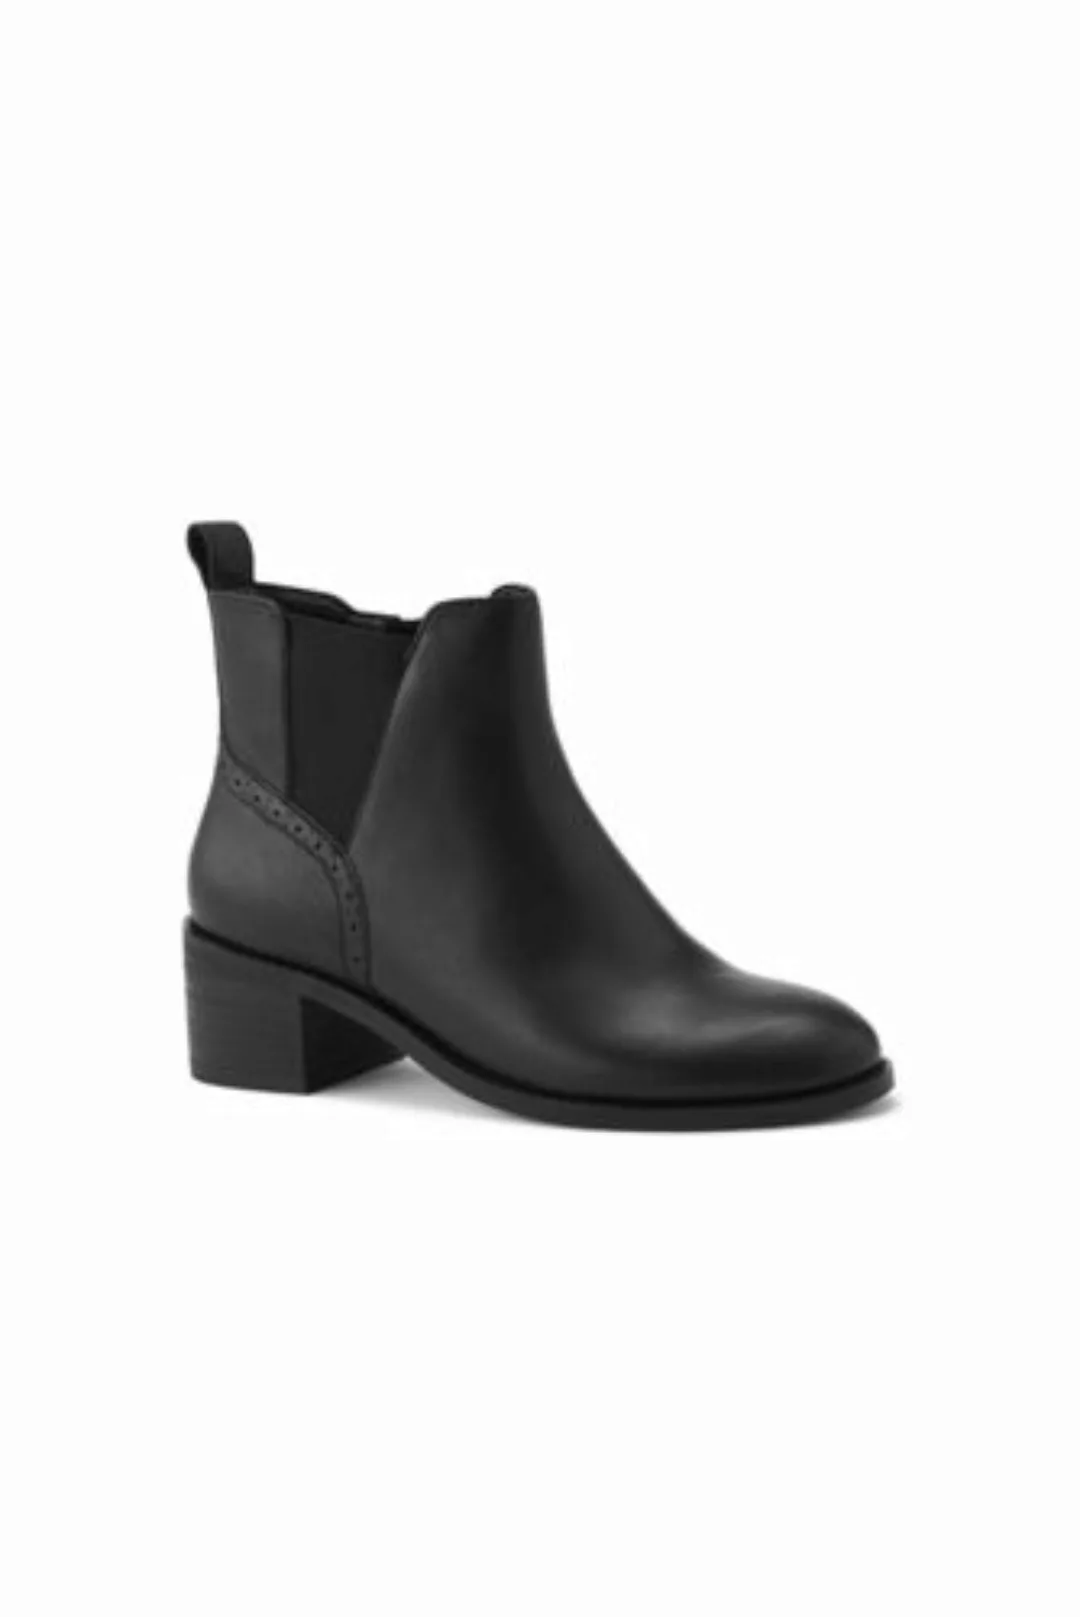 Chelsea-Boots mit Blockabsatz, Damen, Größe: 37.5 Normal, Schwarz, Leder, b günstig online kaufen